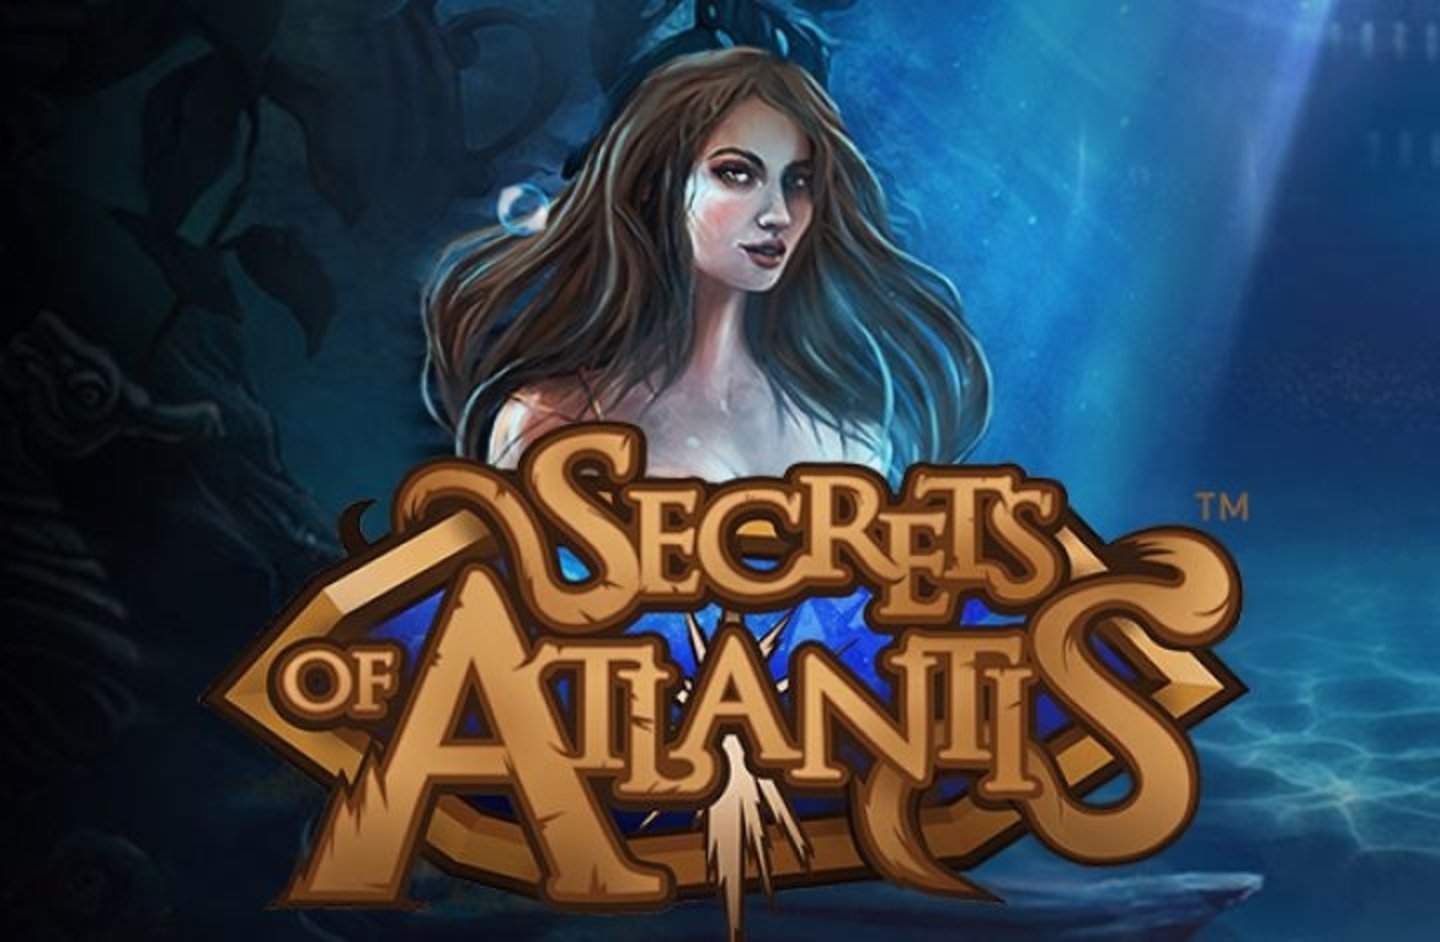 Secrets of Atlantis demo